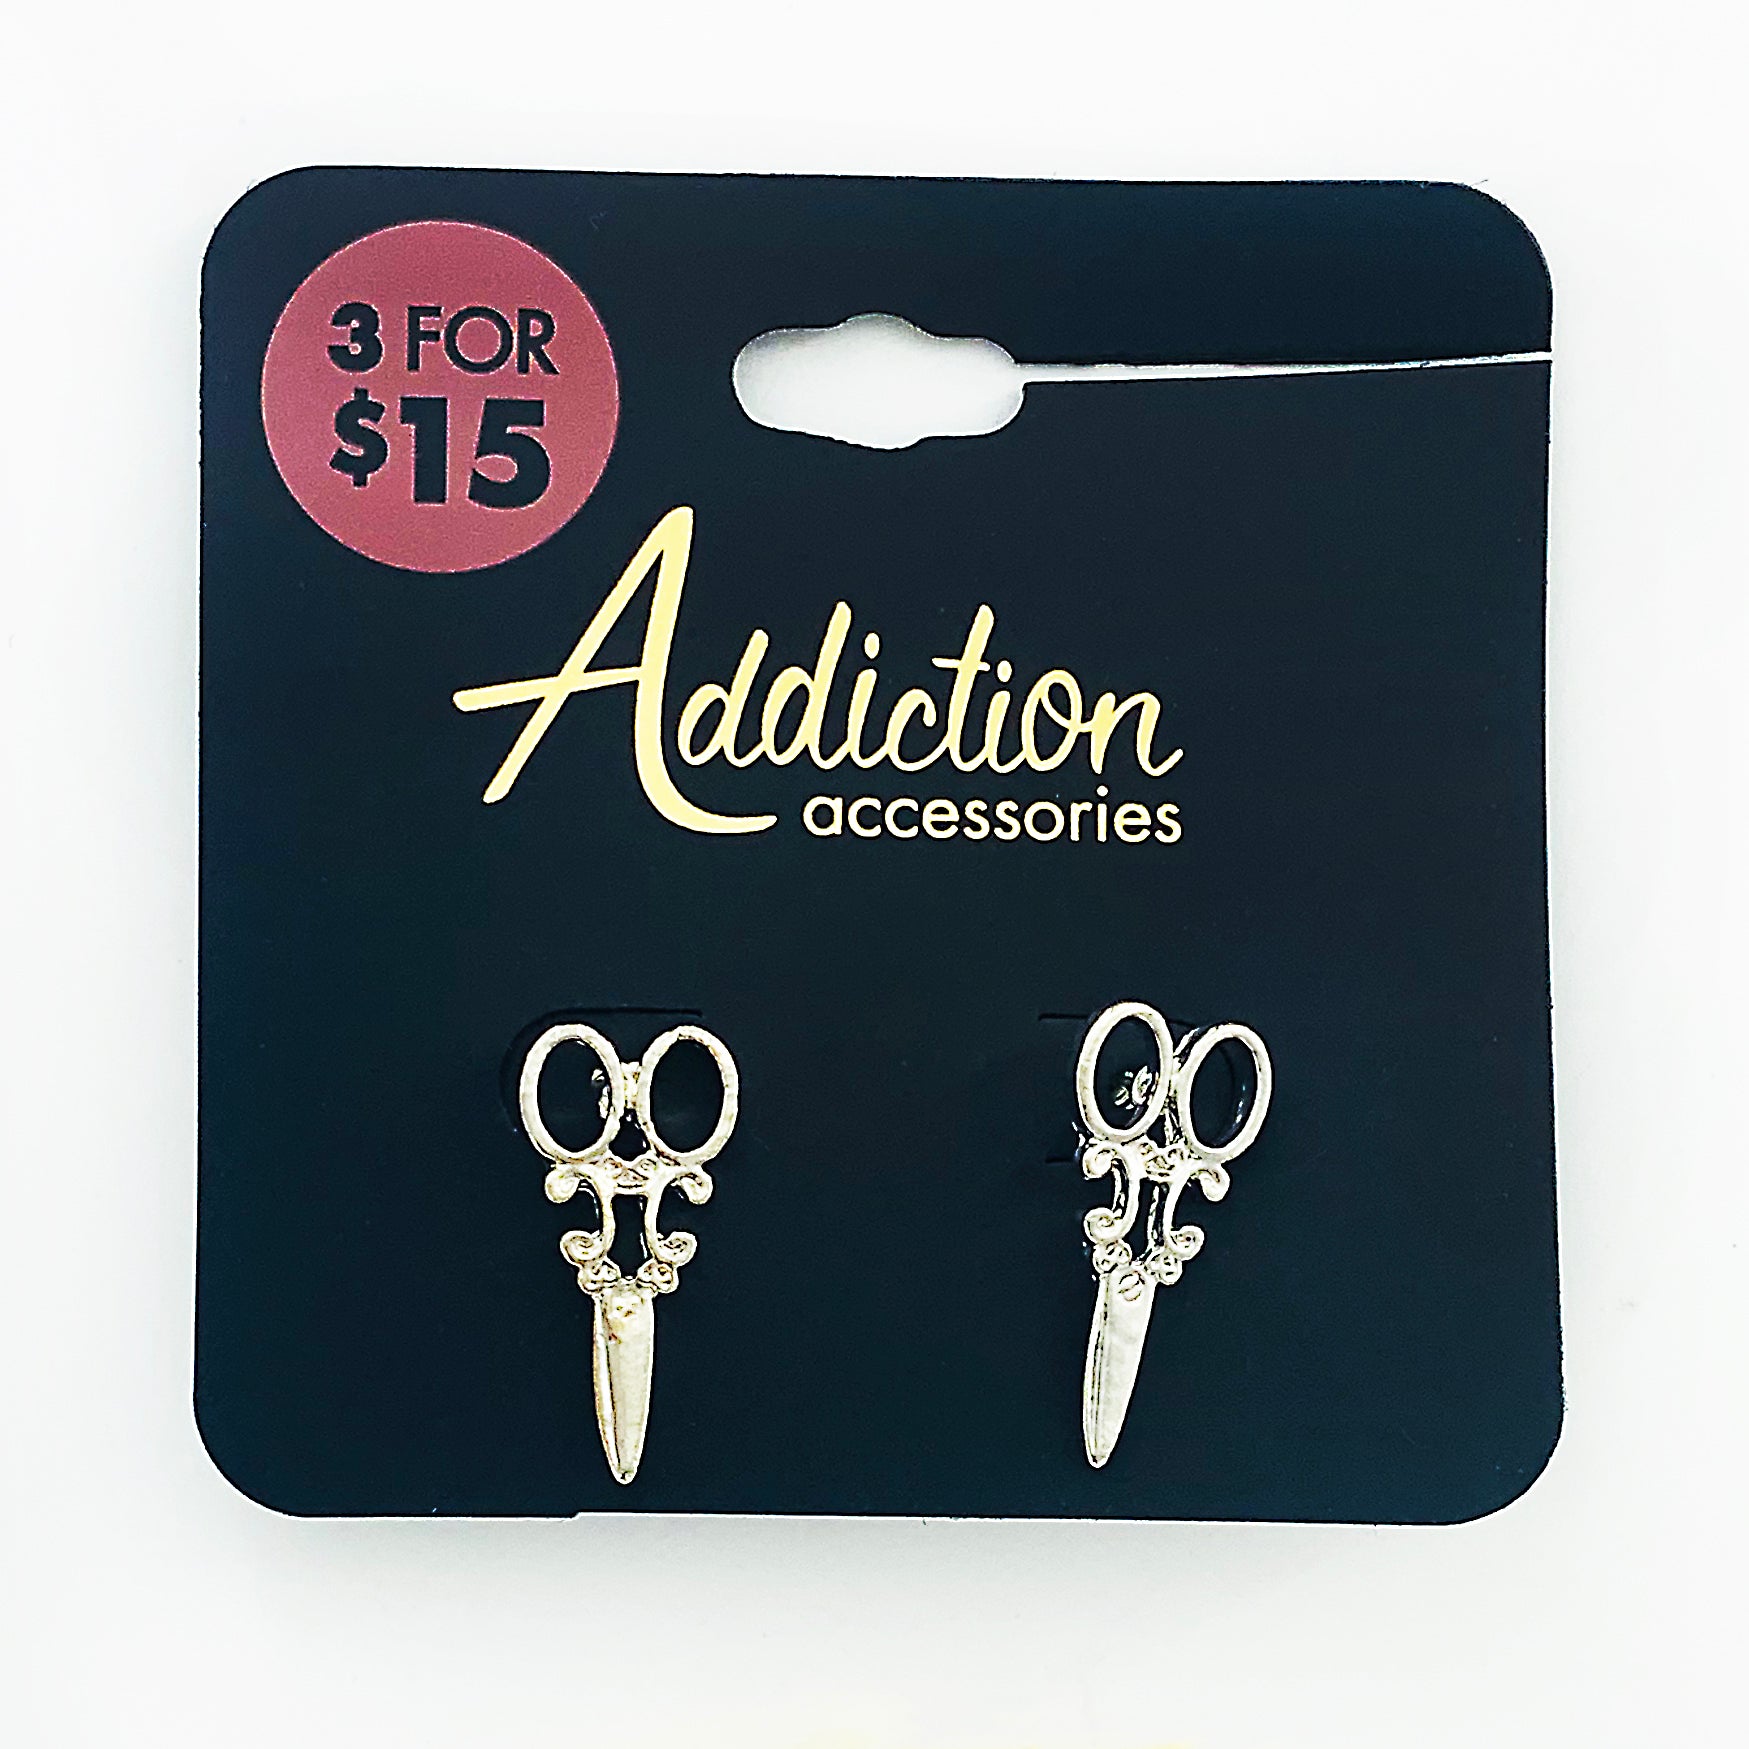 Silver earrings in an ornate scissors design